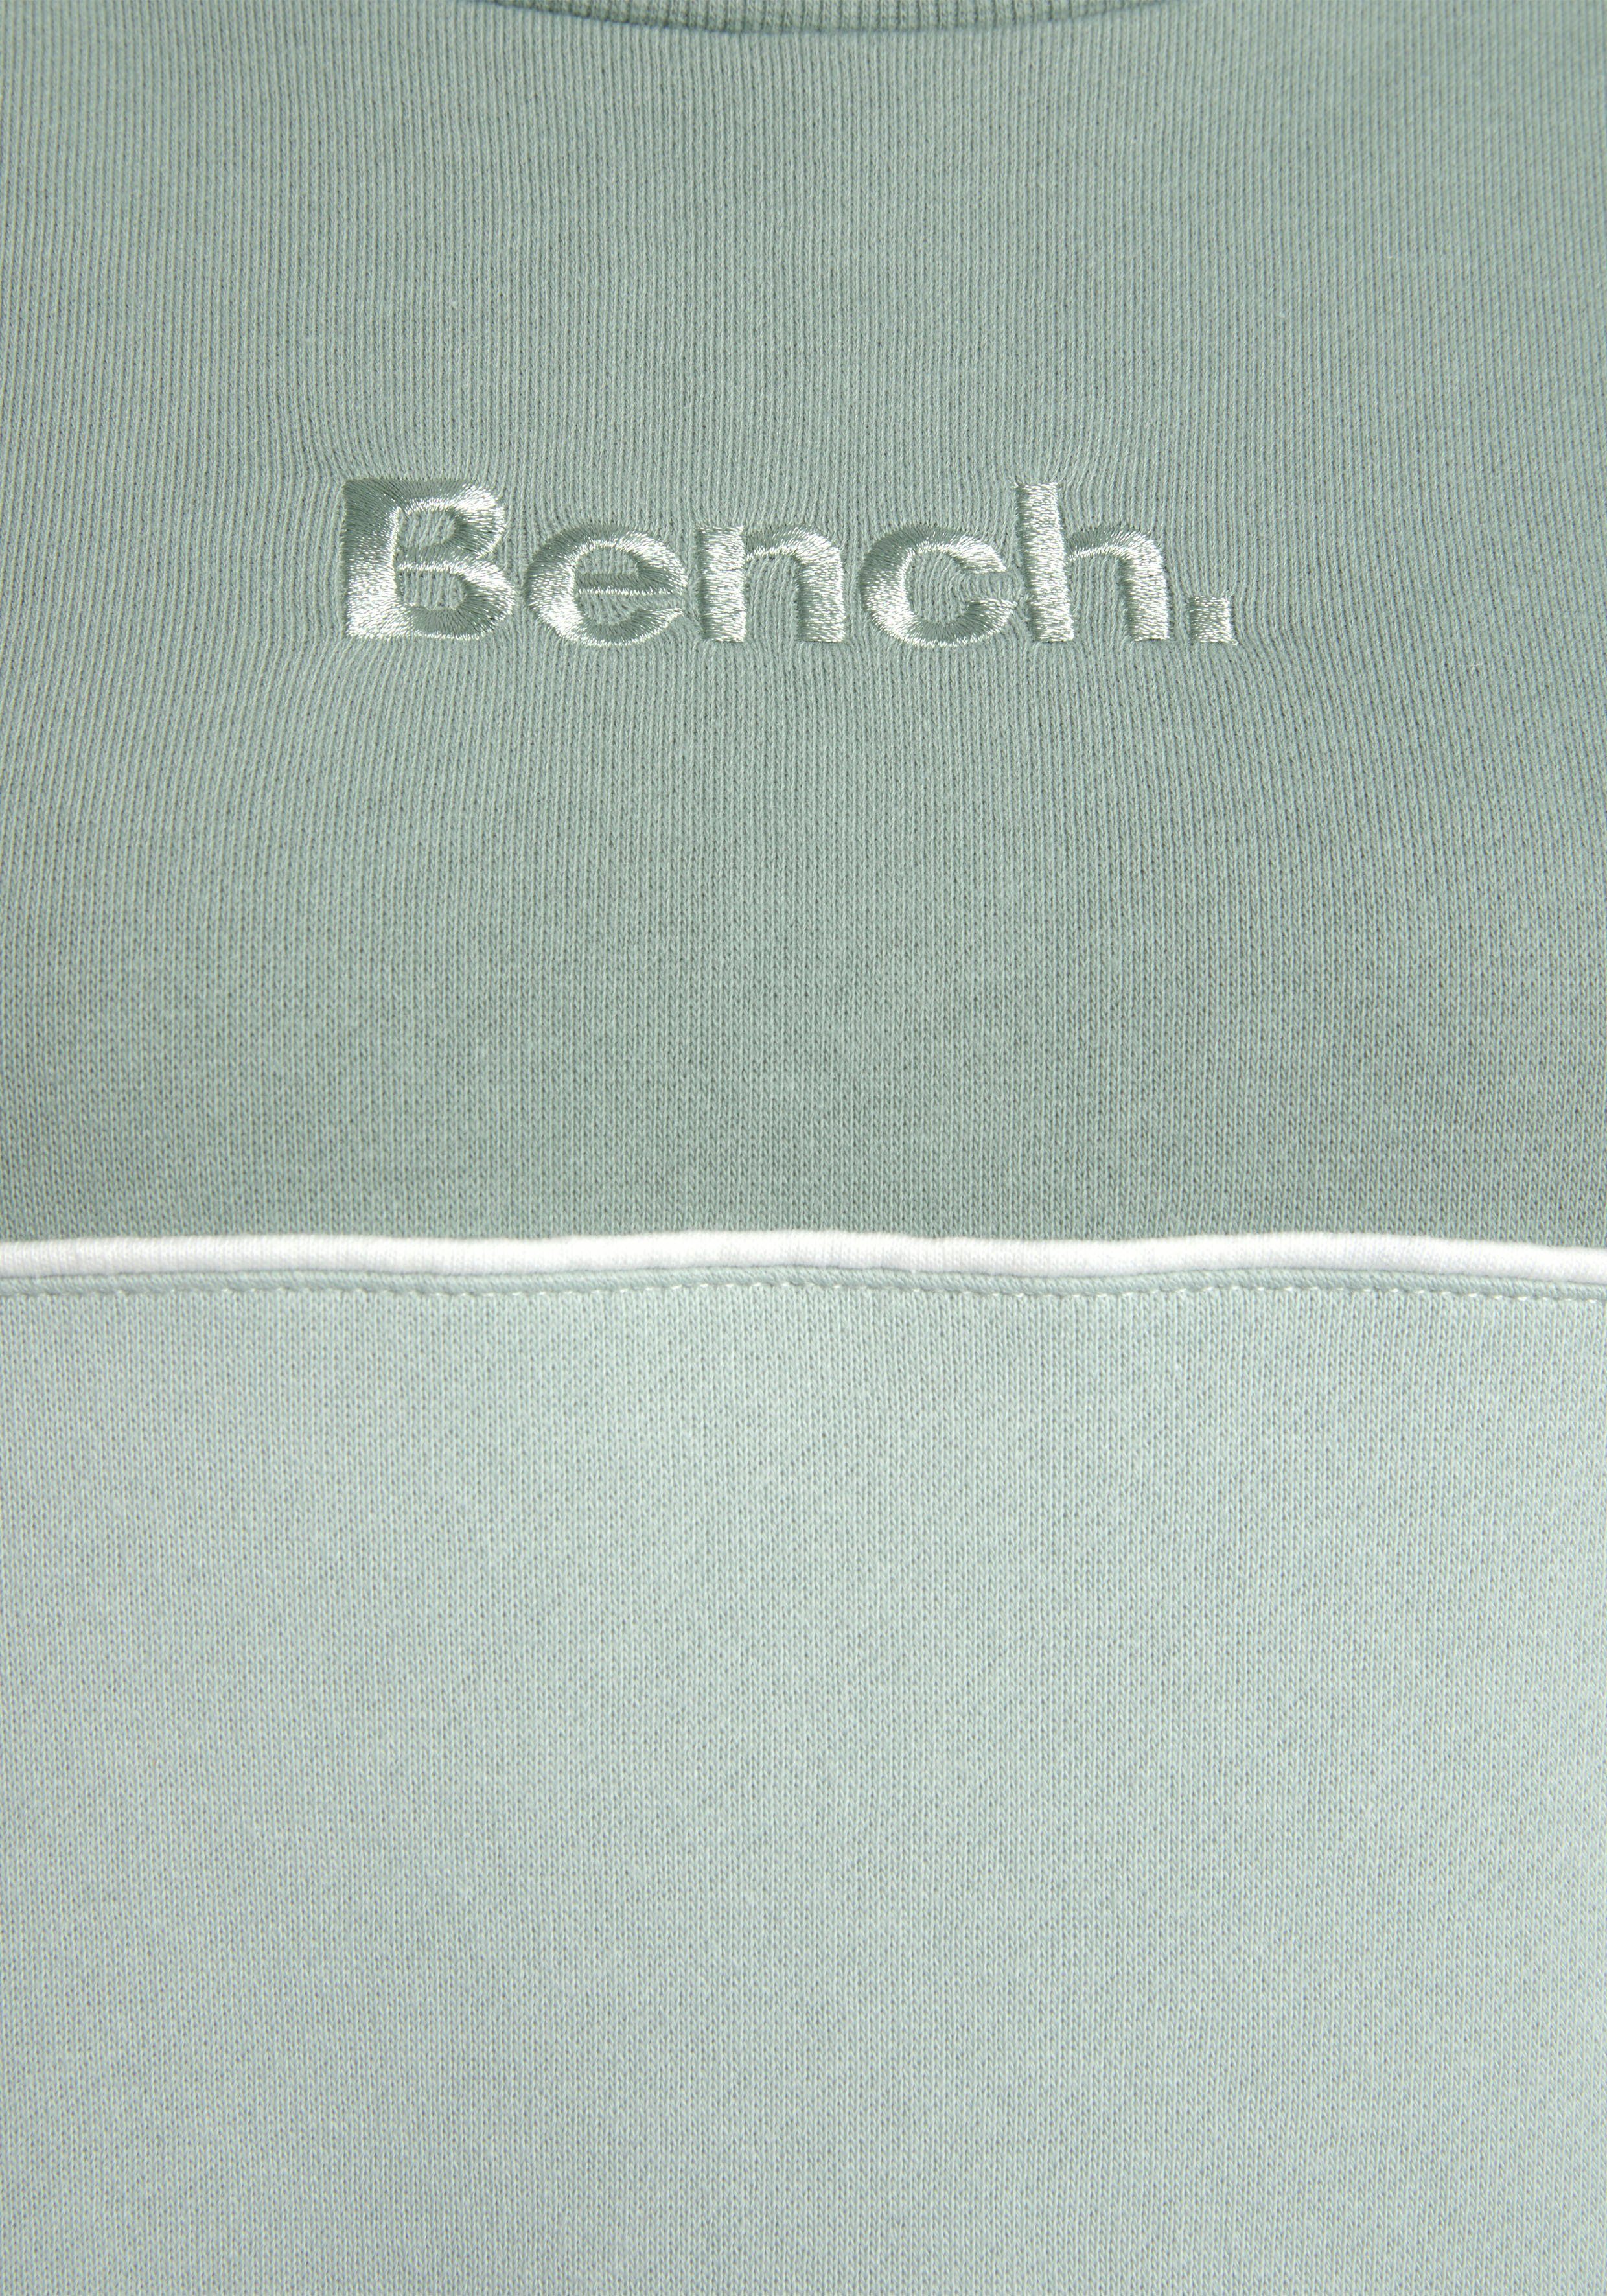 Bench. Sweatkleid in Logostickerei mit zwei Farben grün-graugrün